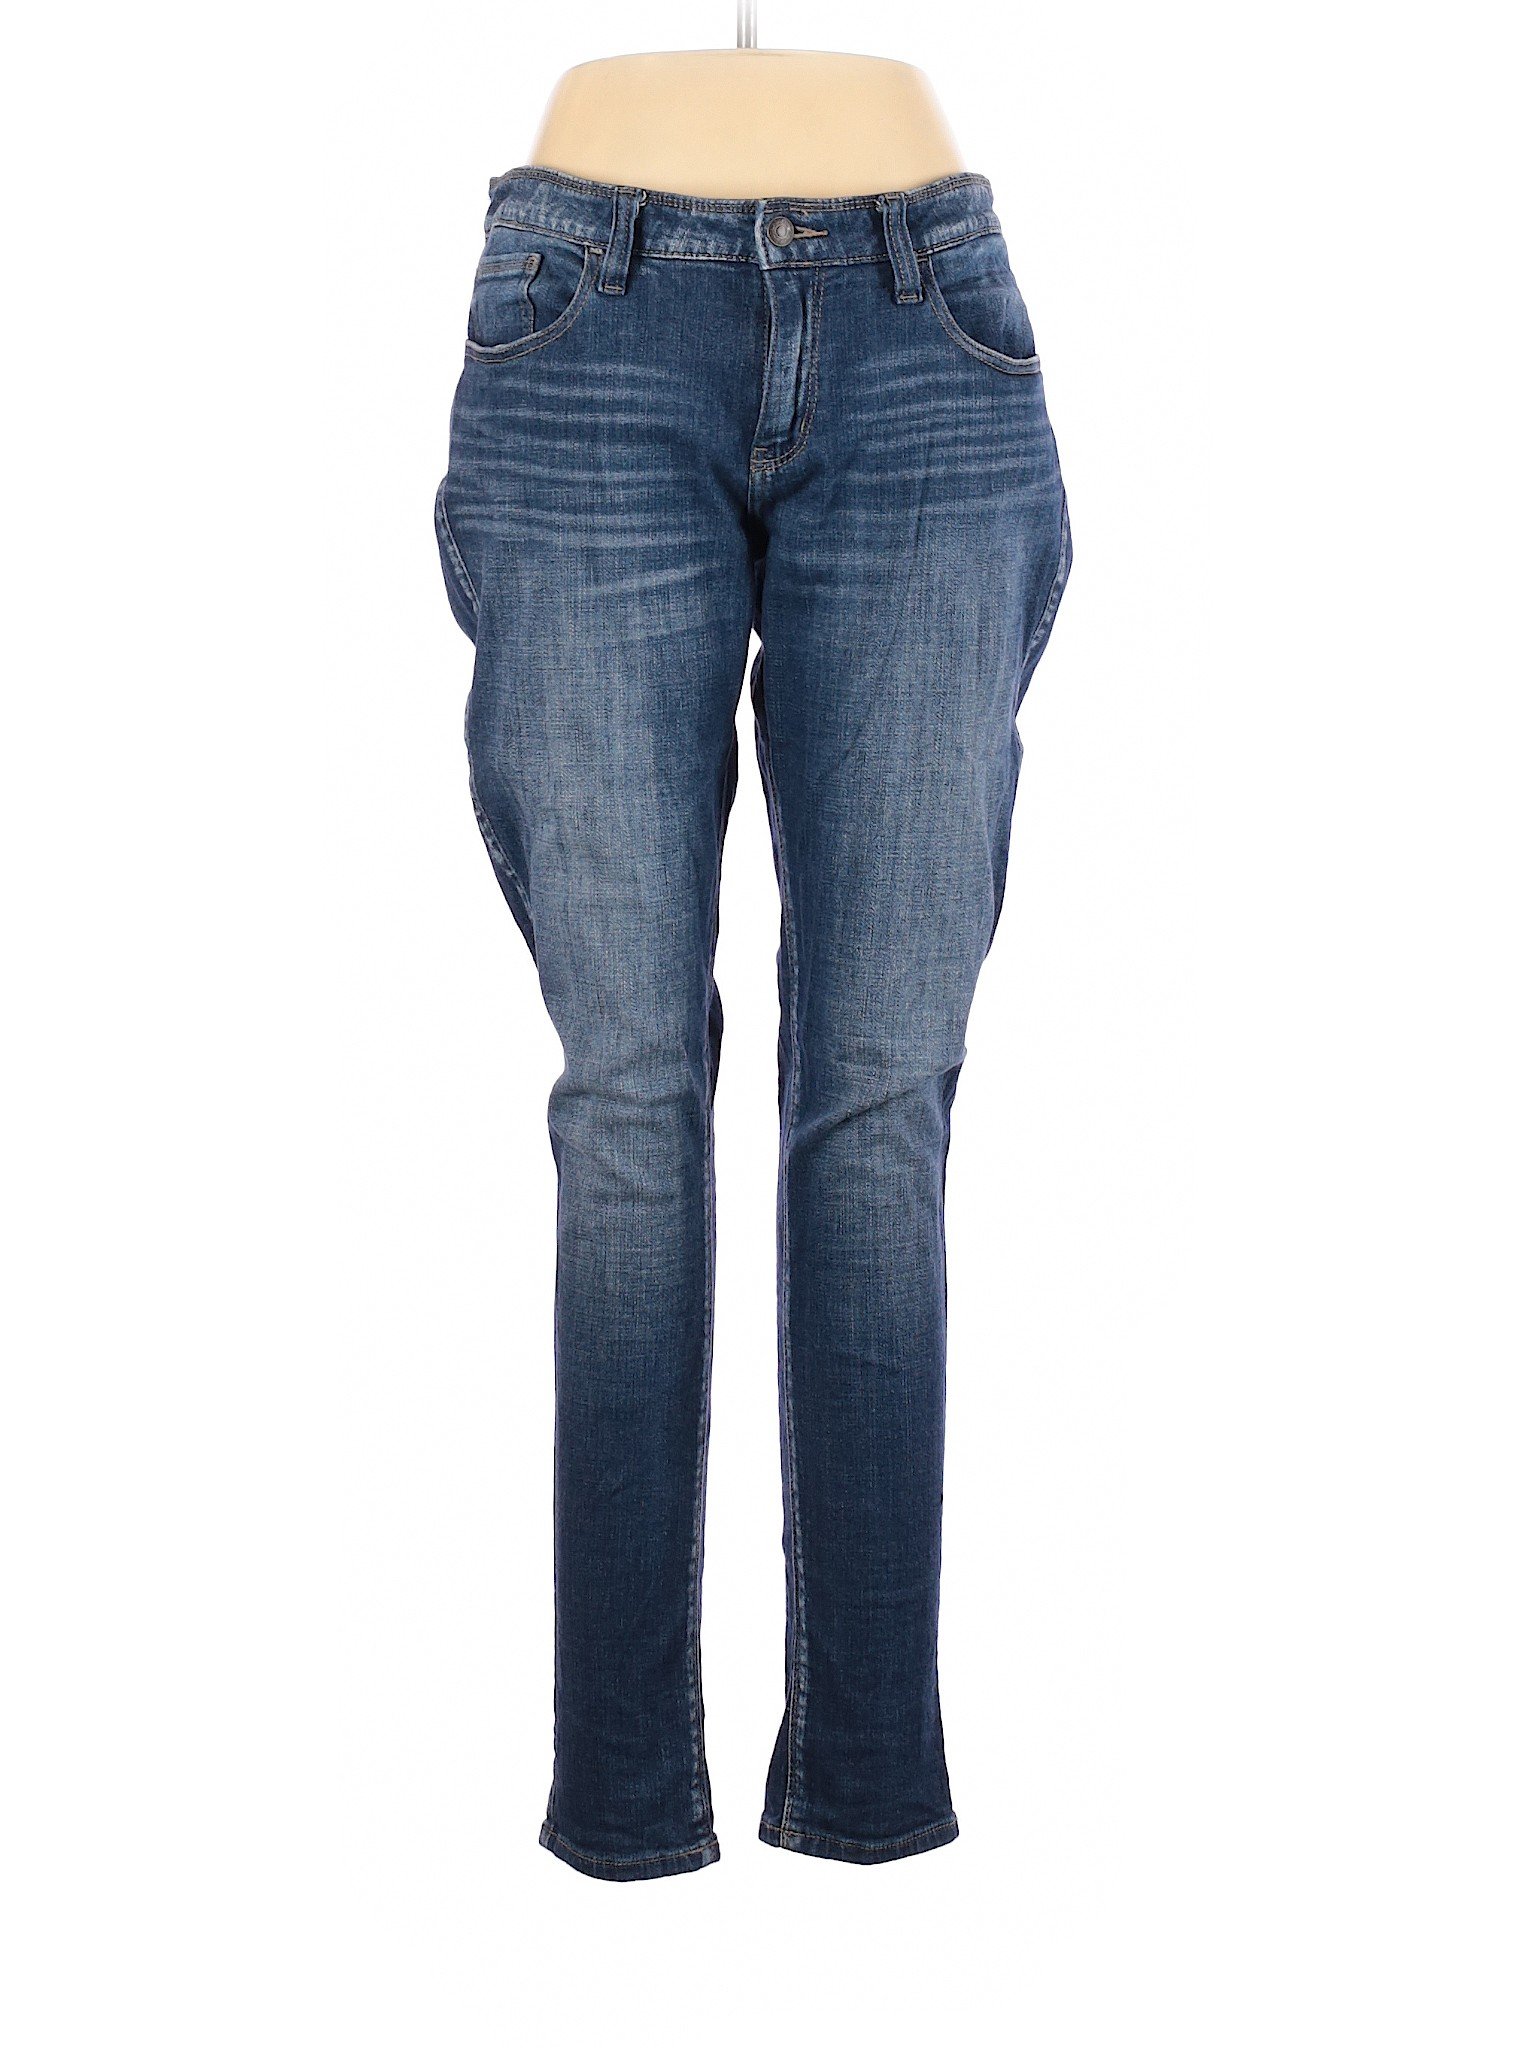 Daytrip Women Blue Jeans 32W | eBay